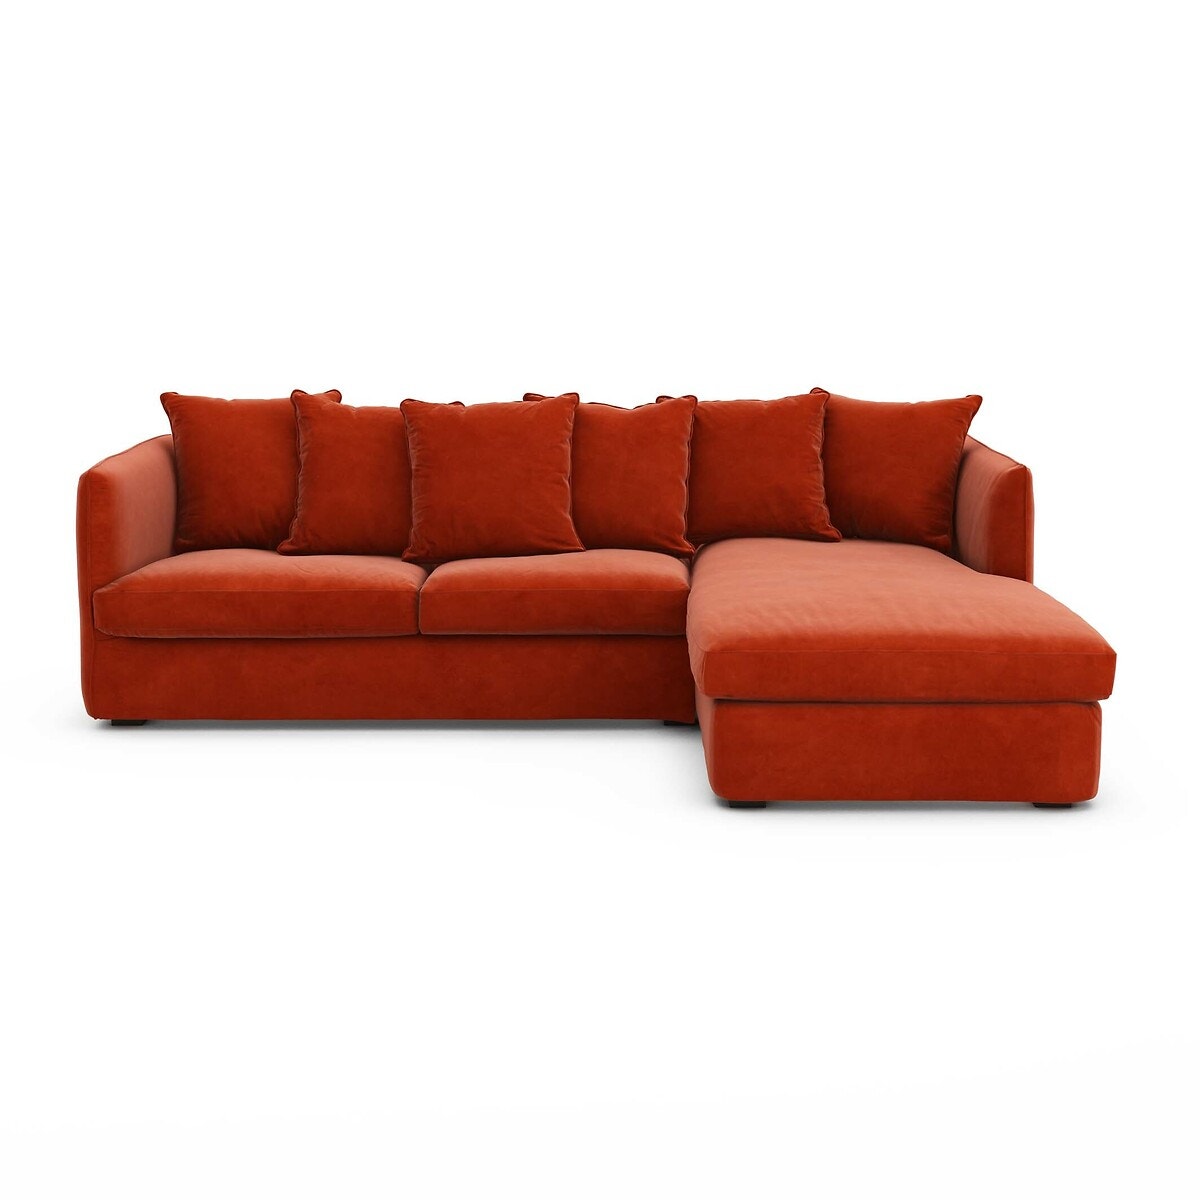 Σπίτι > Έπιπλα > Καθιστικό > Καναπέδες > Γωνιακοί καναπέδες Γωνιακός πτυσσόμενος καναπές-κρεβάτι από βελούδο Μ95xΠ260xΥ82cm